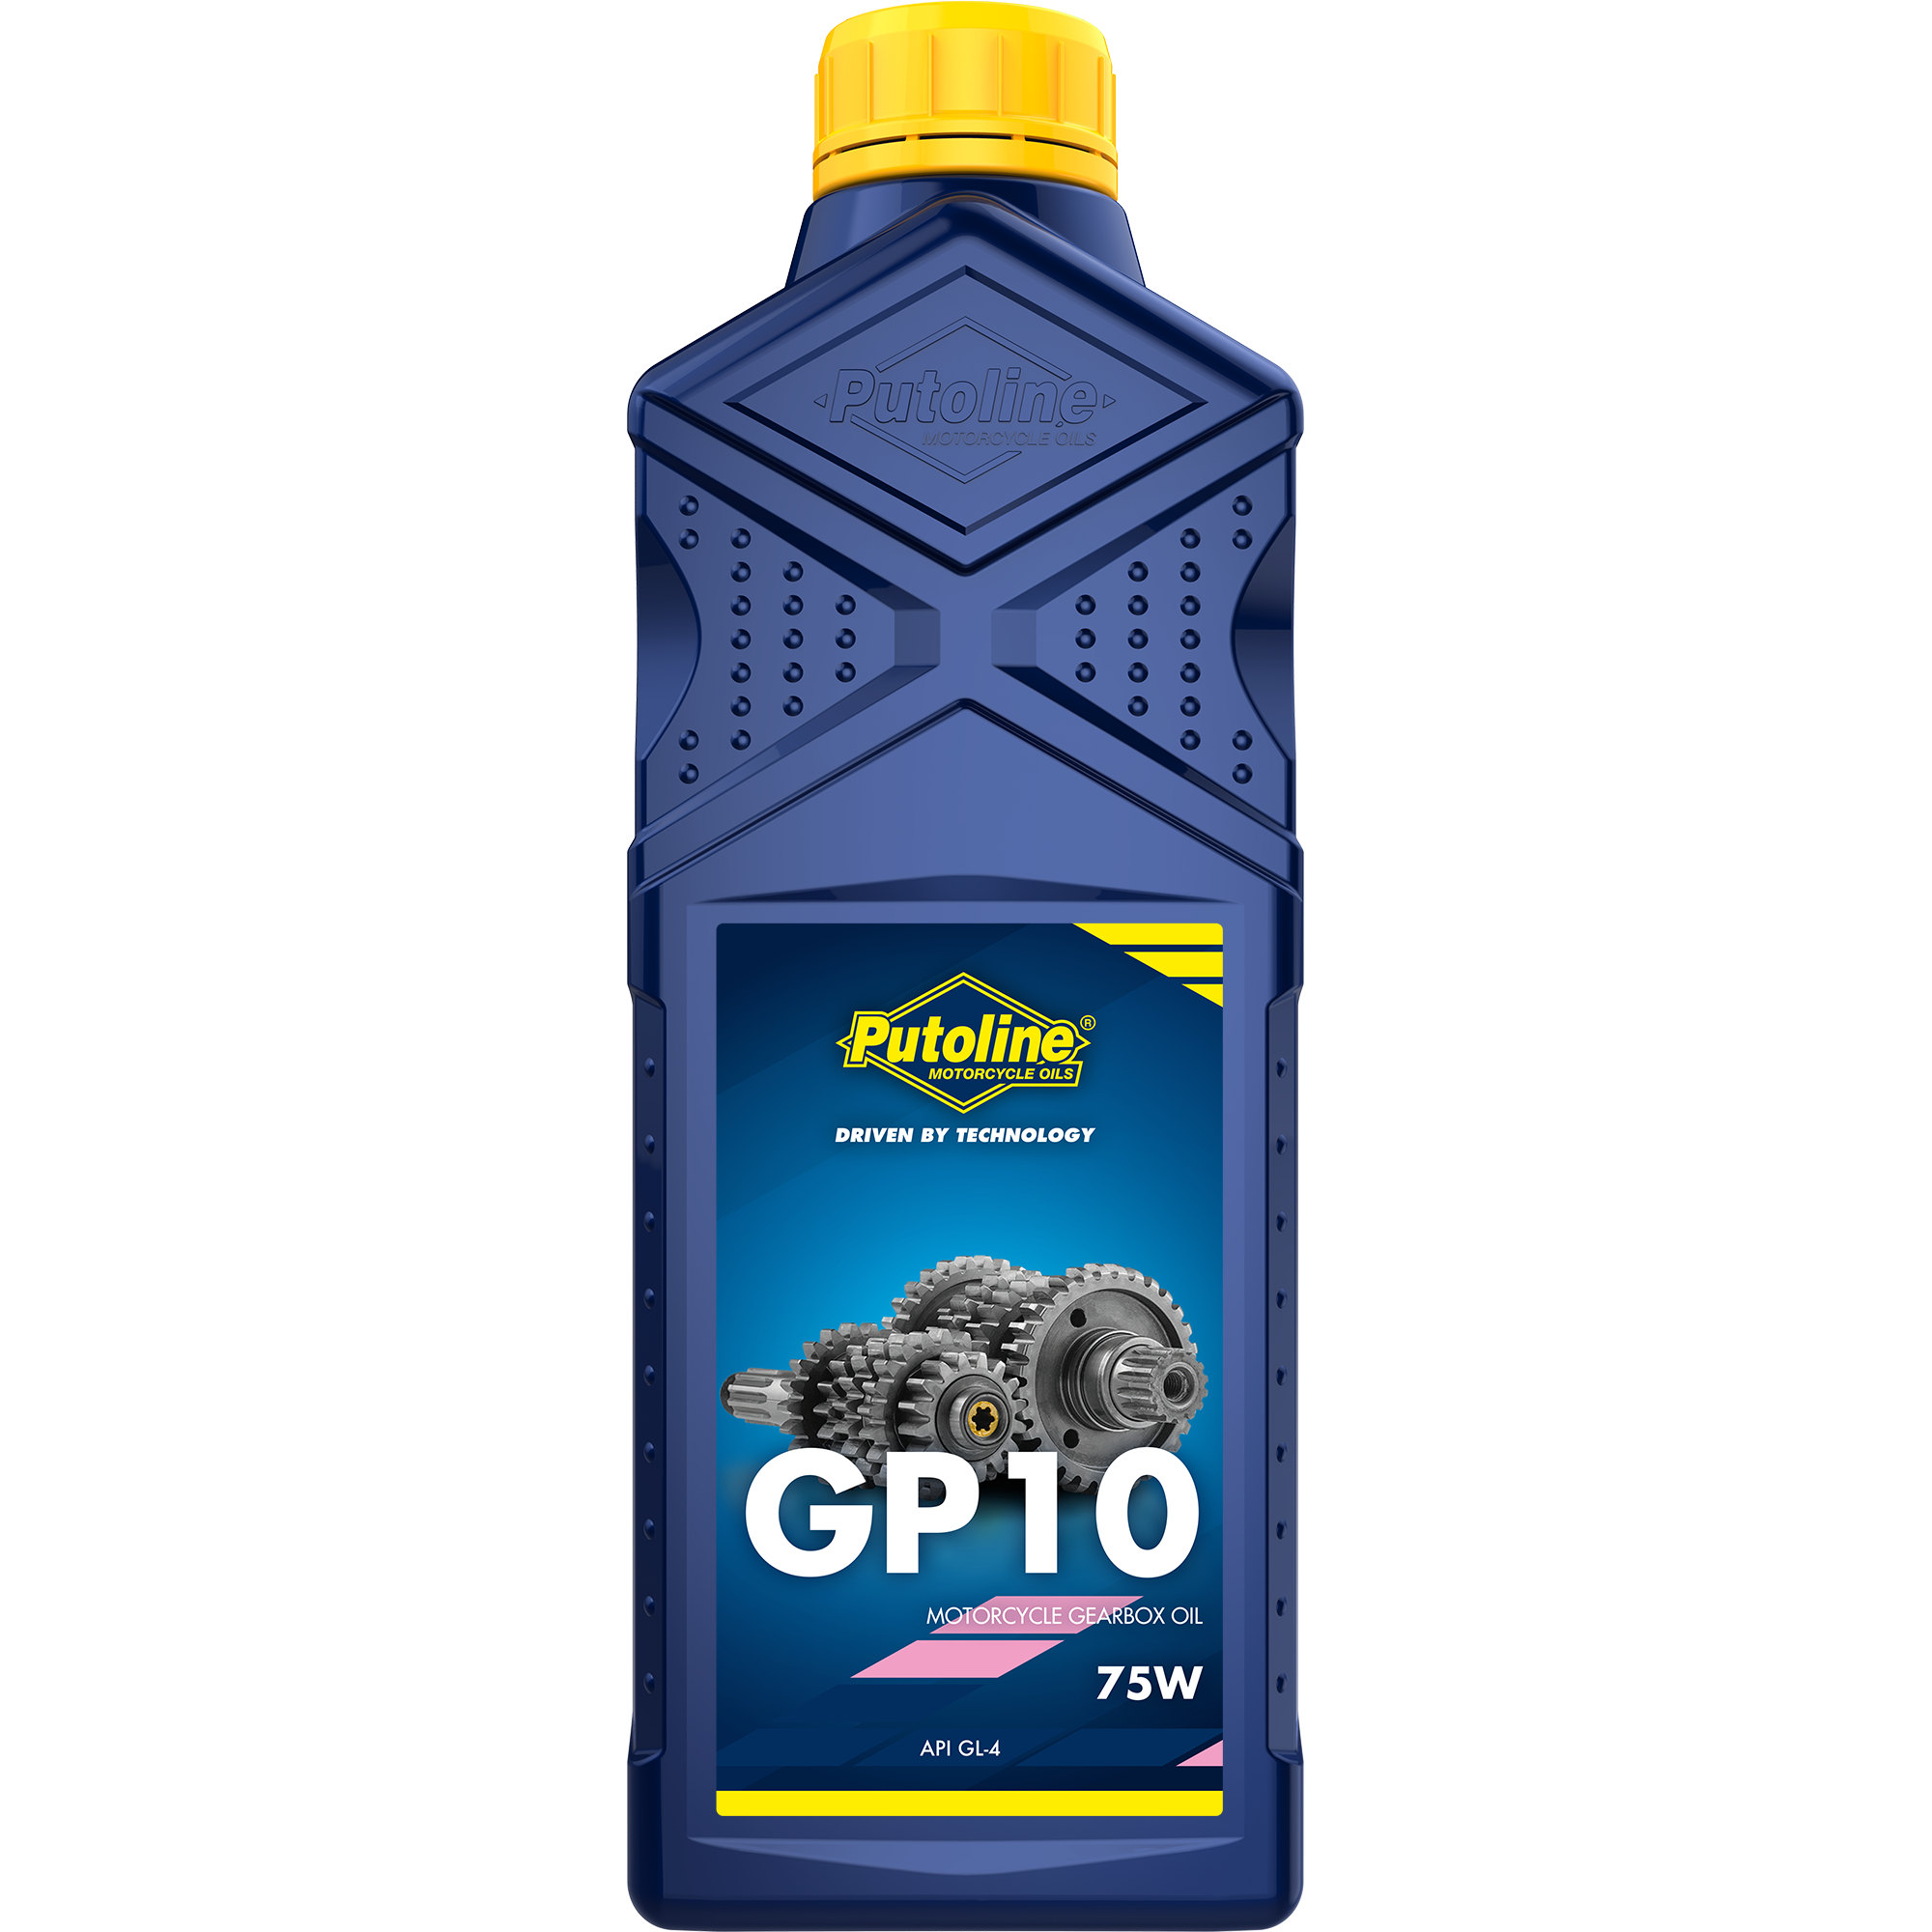 Putoline GP 10 75W, 1 lt